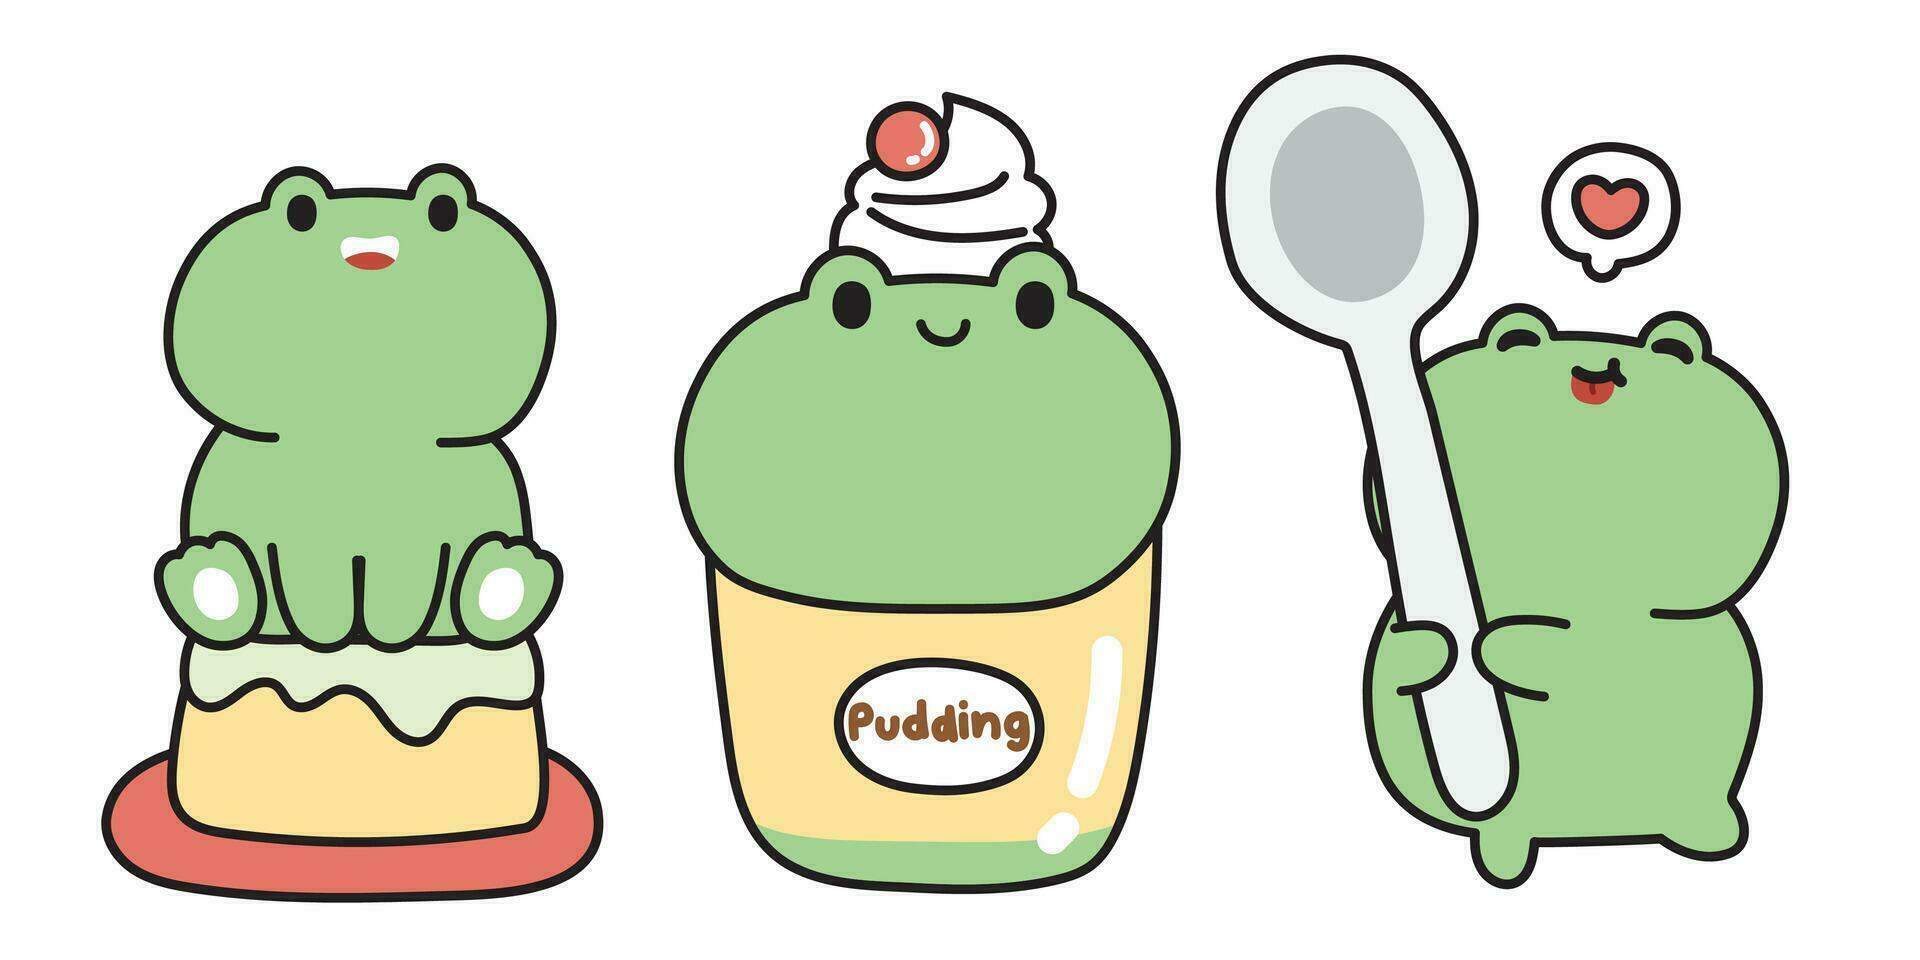 reeks van schattig kikker in matcha groen thee pudding concept. lief en dessert.reptiel dier karakter tekenfilm ontwerp collectie.kawaii.vector.illustratie. vector